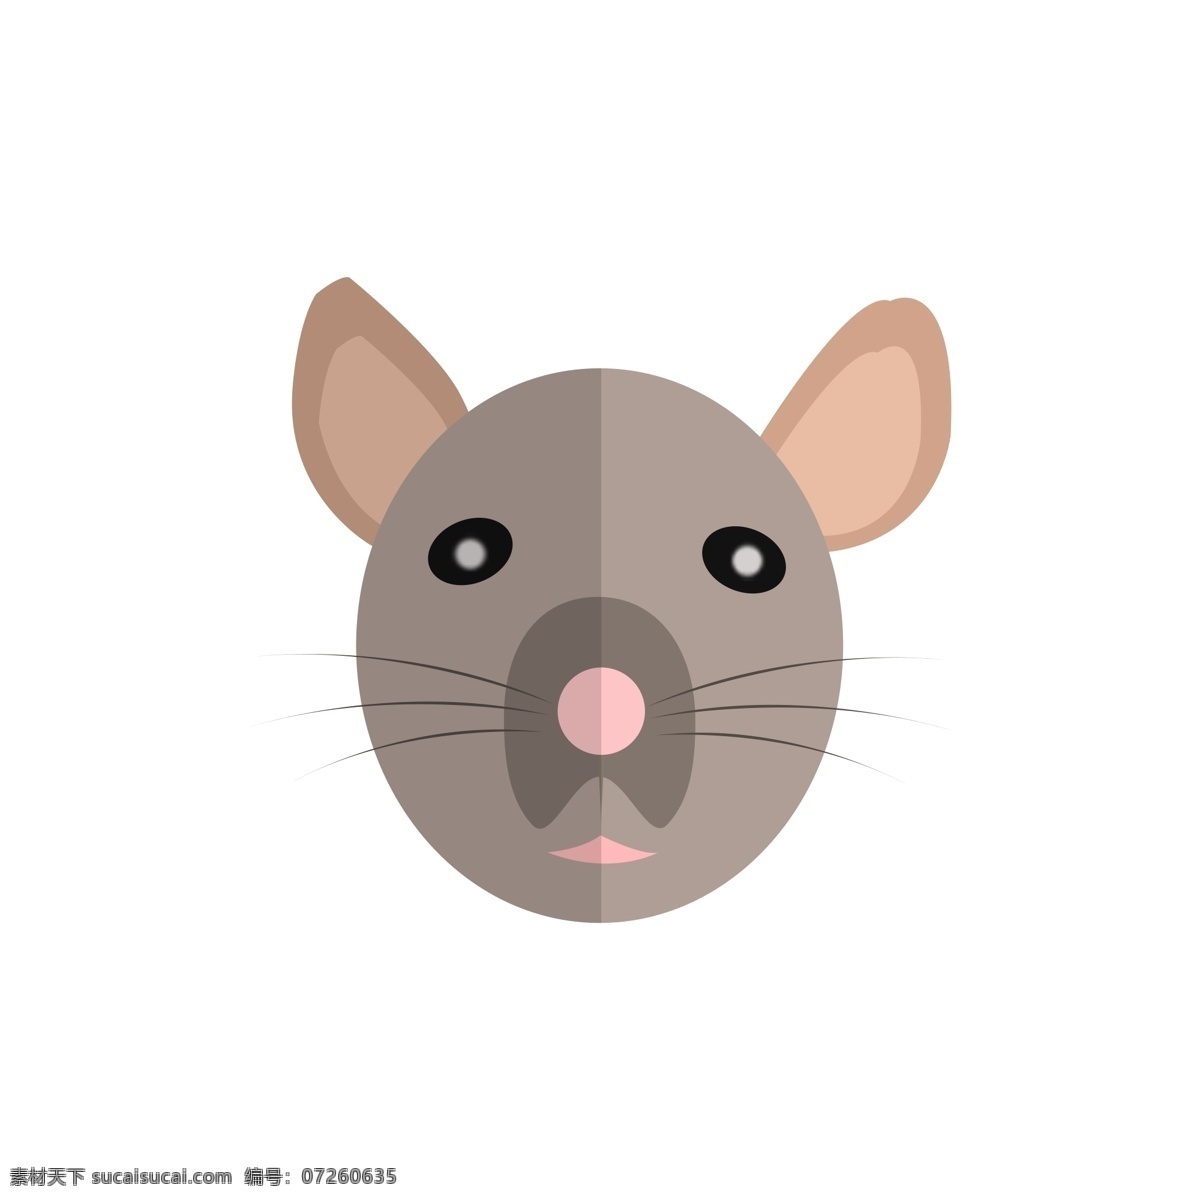 十二生肖 小 老鼠 卡通 可爱 头像 鼠 动物头像 卡通头像 可爱头像 老鼠头像 老鼠图标